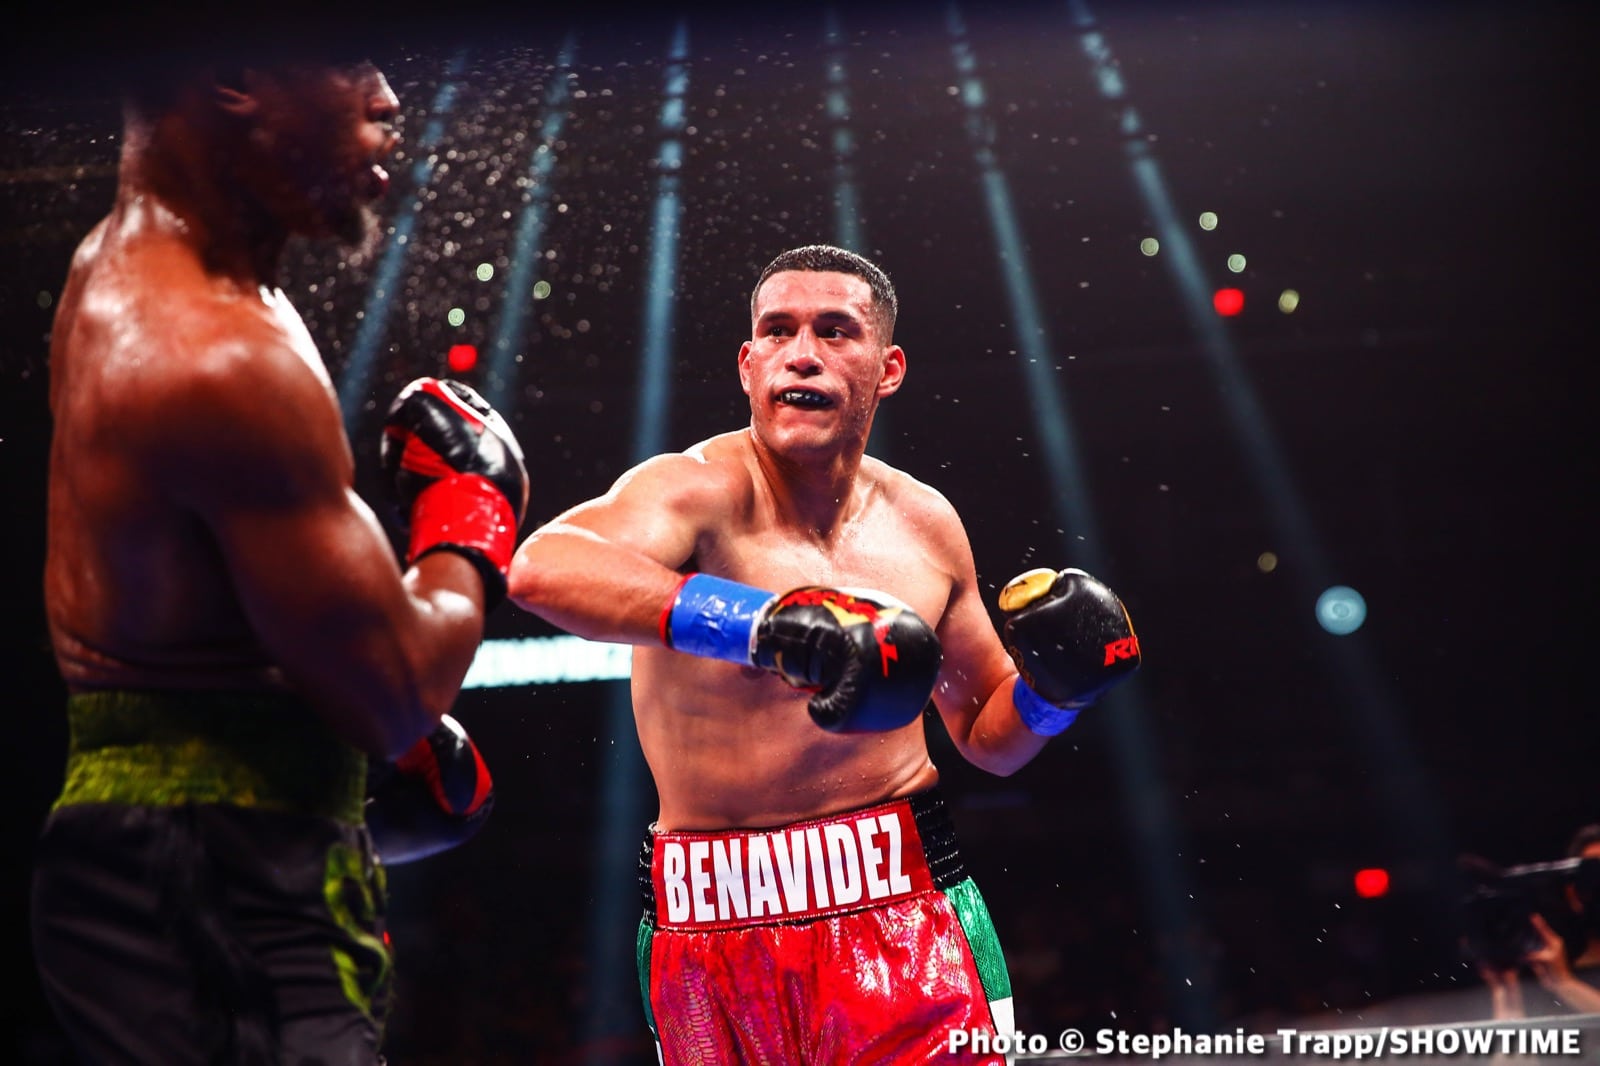 David Benavidez, Jose Benavidez Jr., Kyrone Davis boxing image / photo